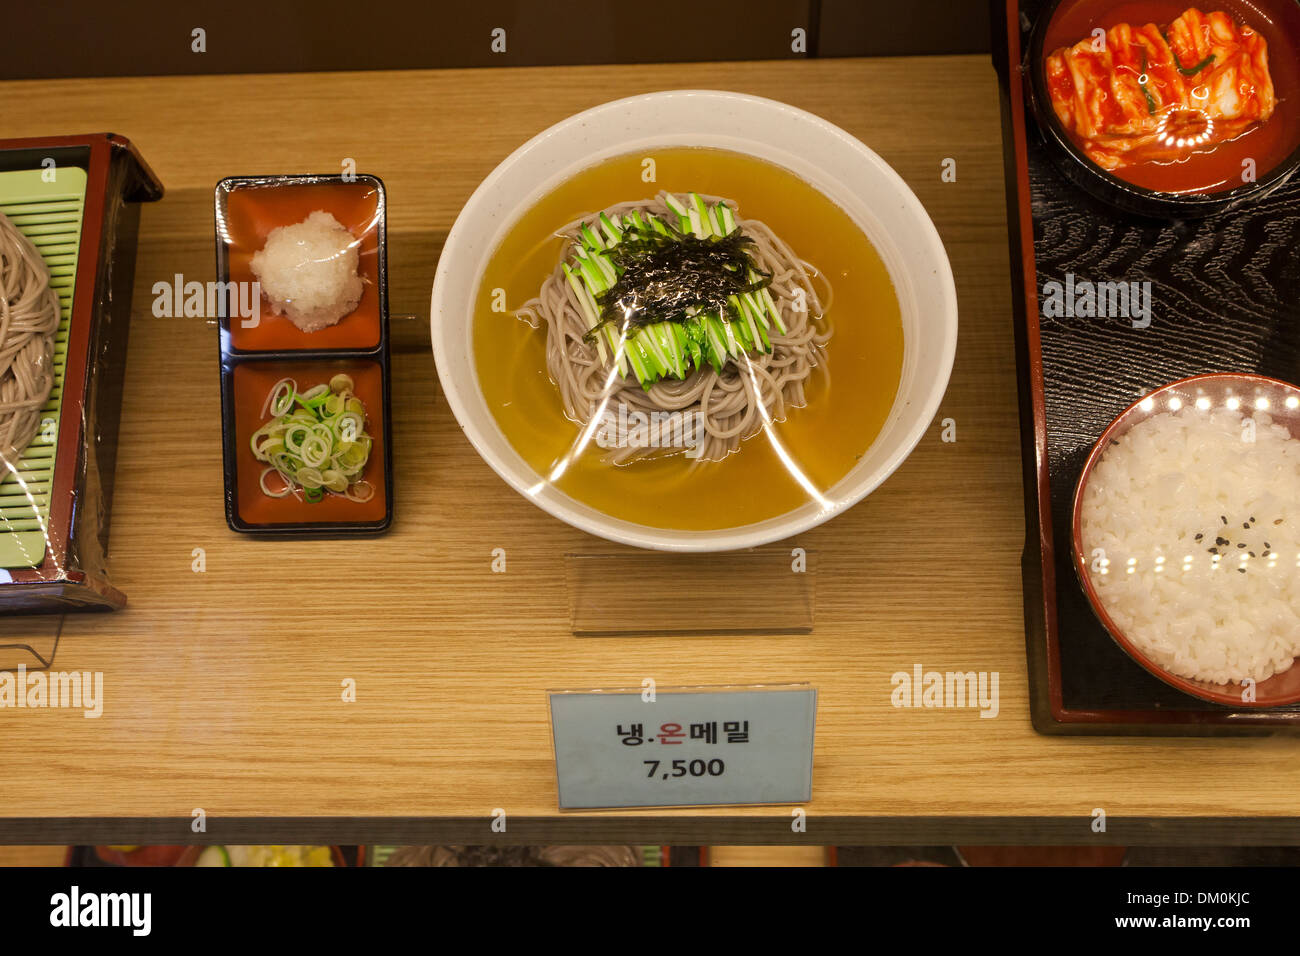 Modèle en plastique (nouilles de sarrasin) vitrine à fast food restaurant - Séoul, Corée du Sud Banque D'Images